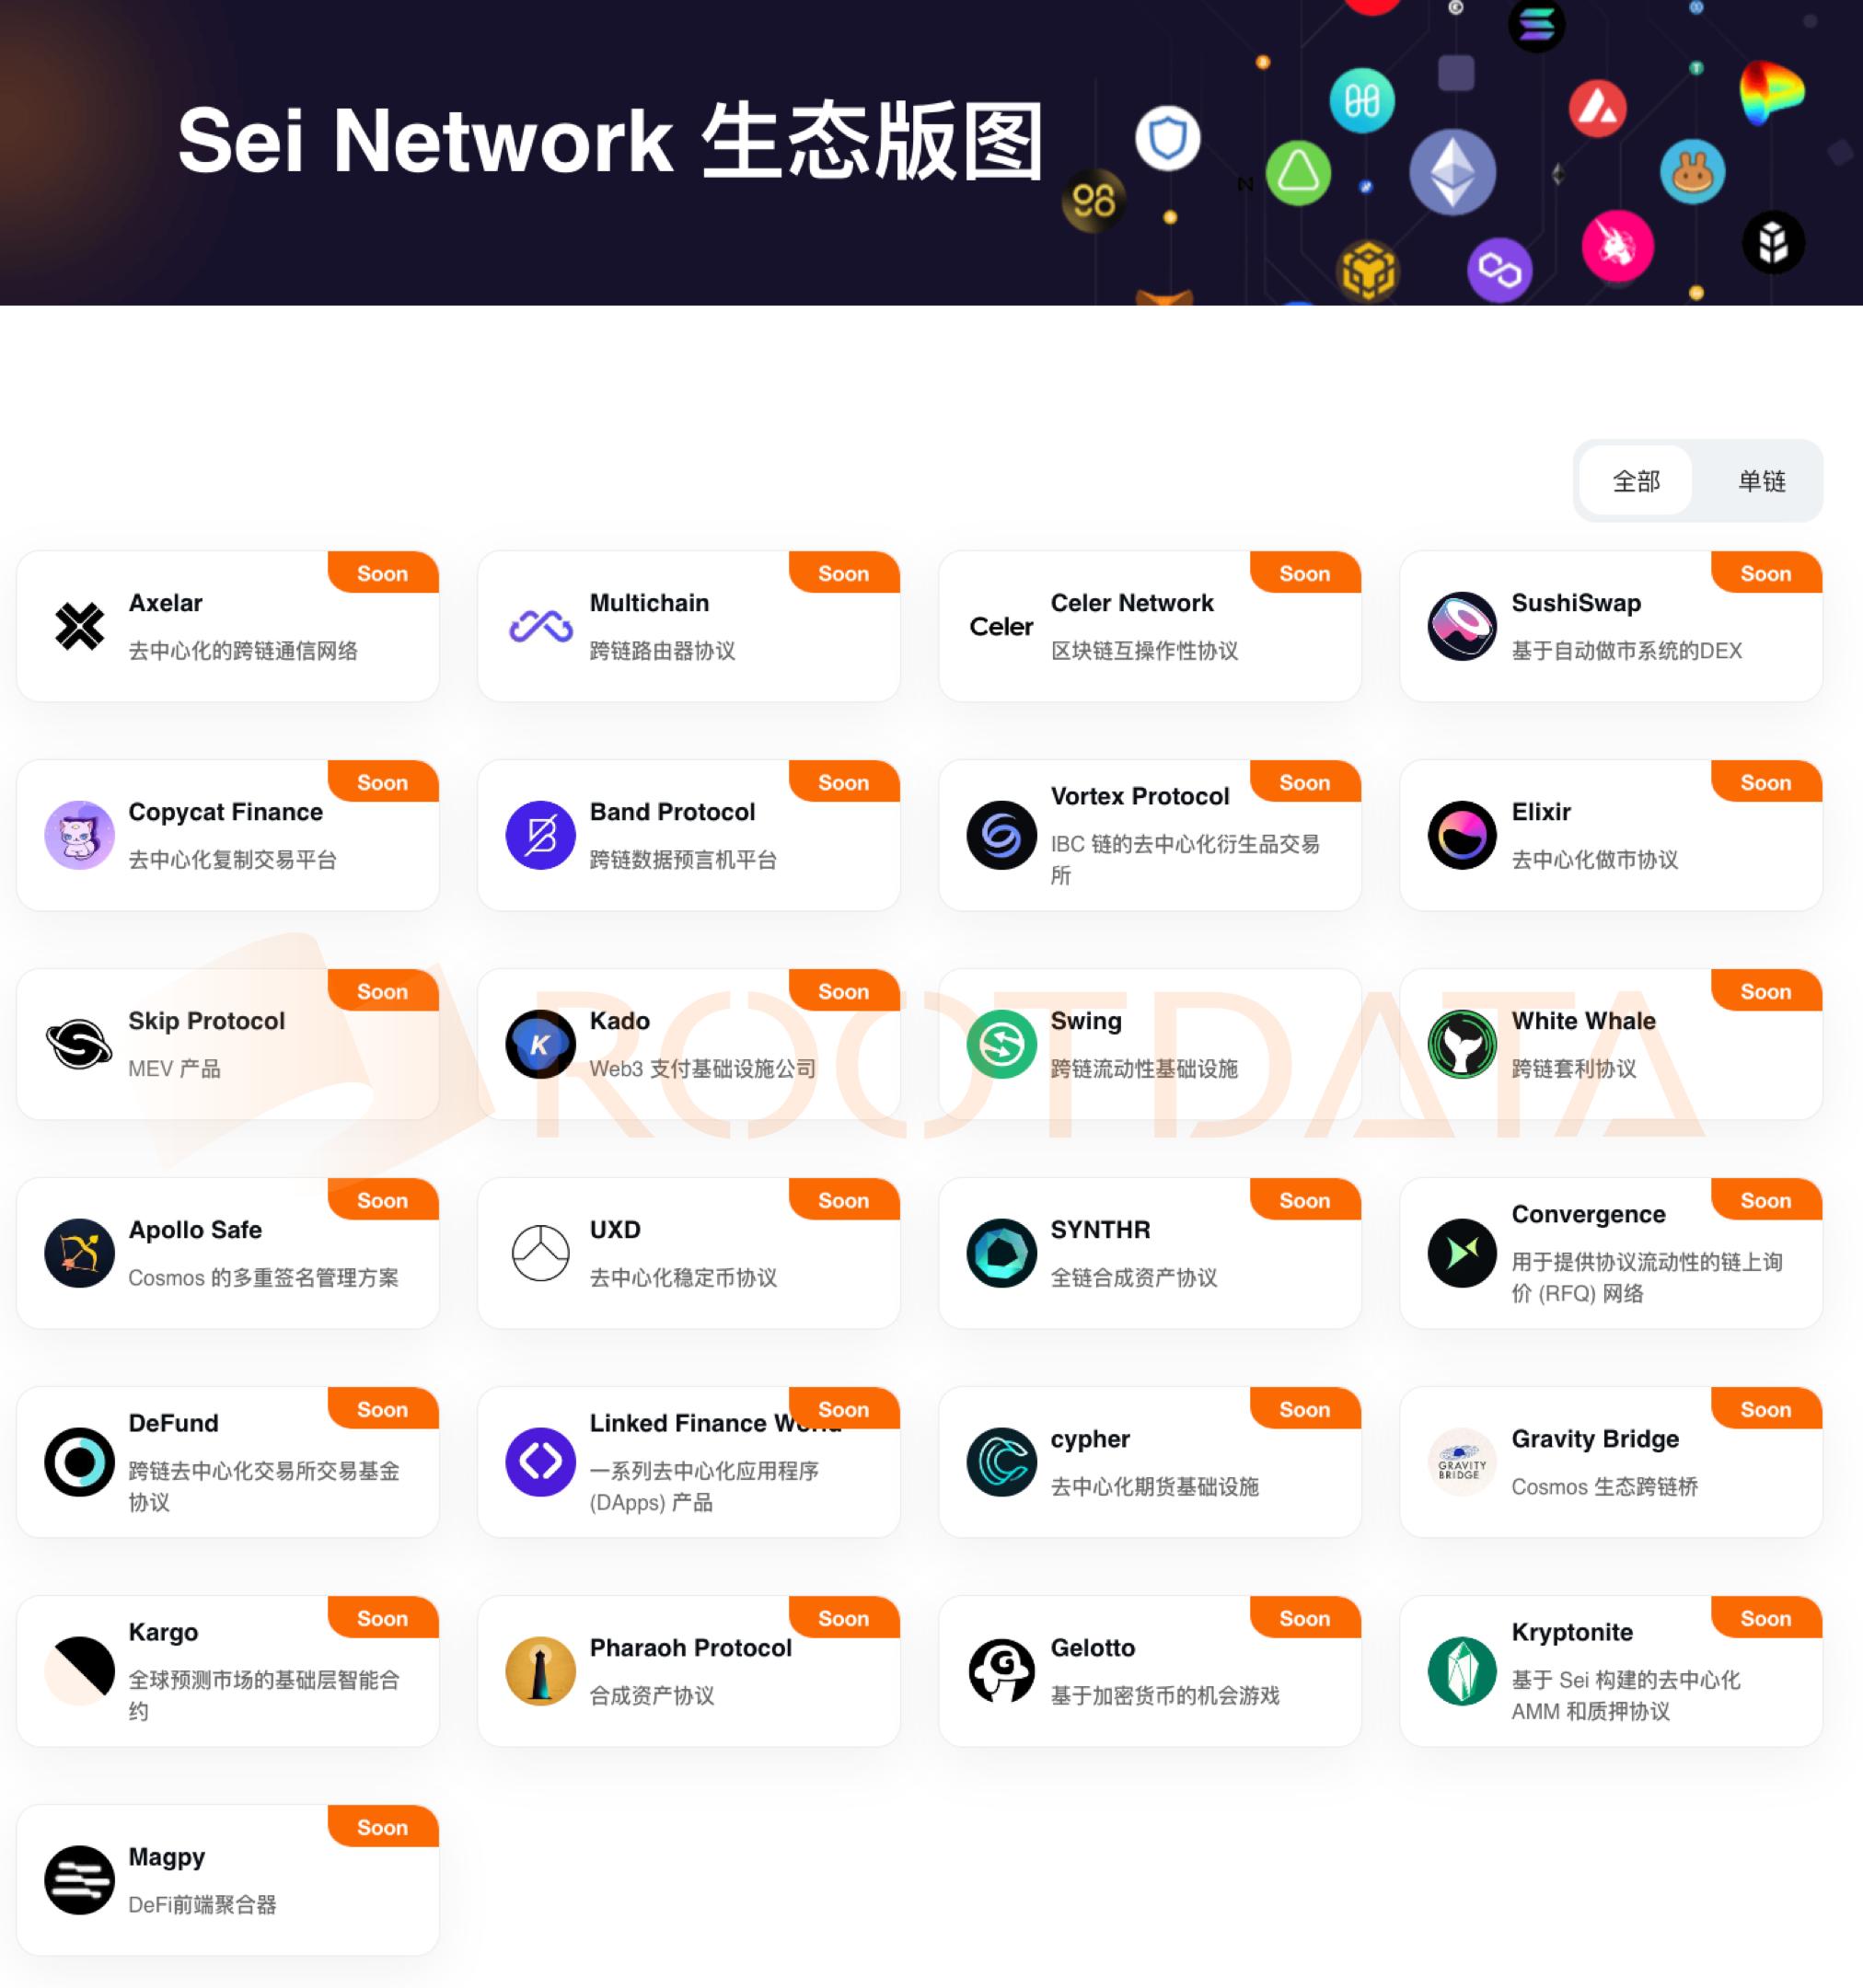 空投在即，一文了解公链Sei Network的最新进展和生态版图